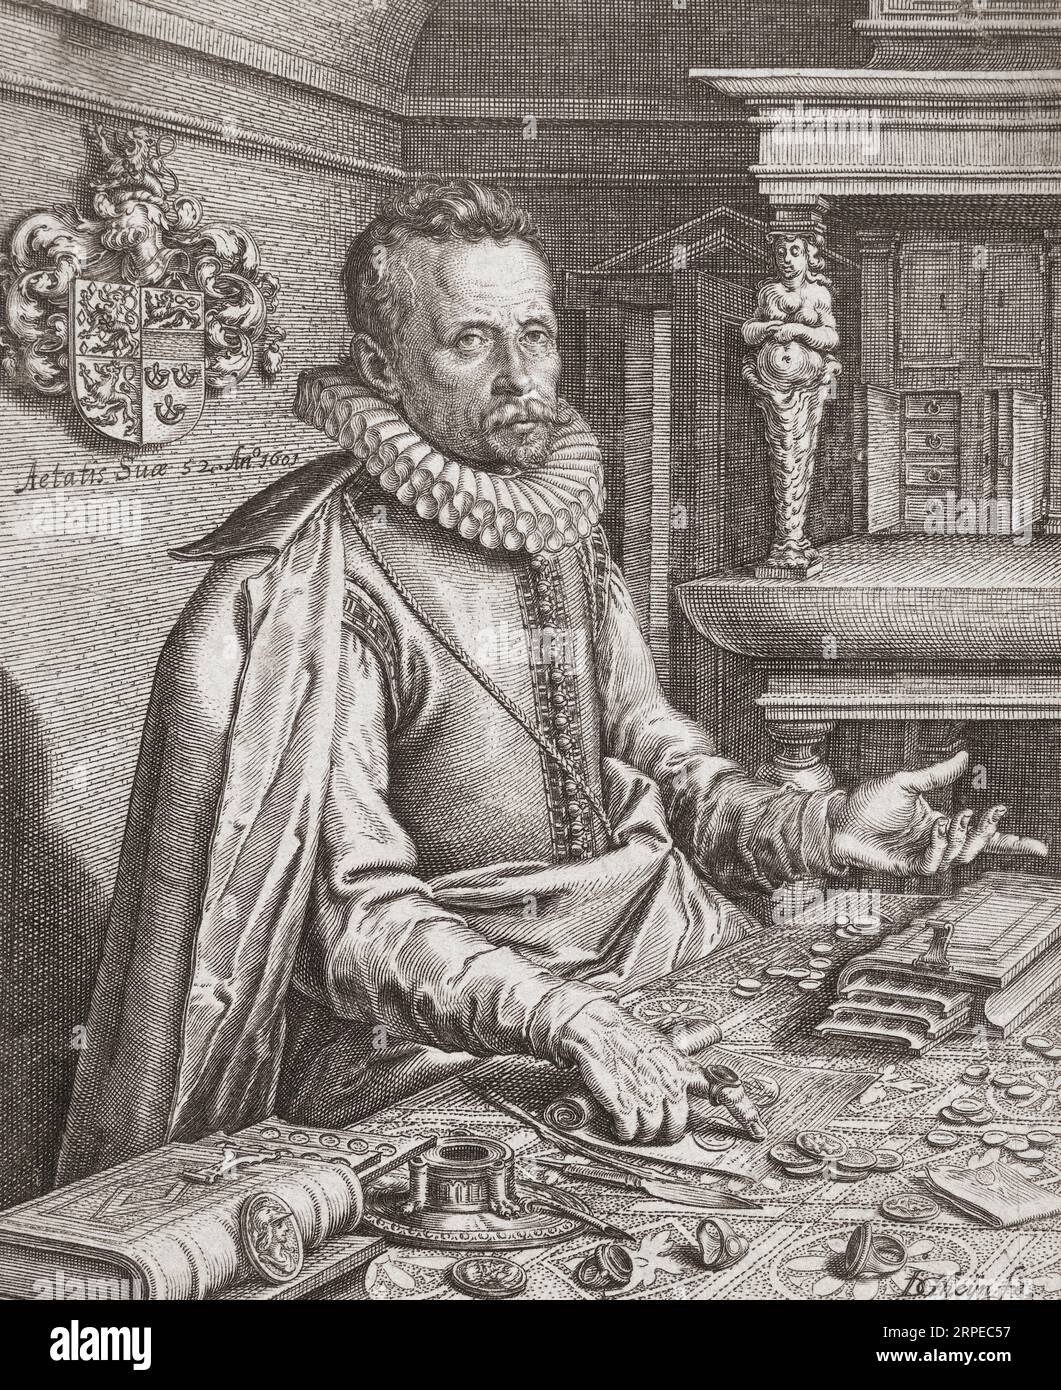 Abraham Gorlaeus, auch bekannt als Abraham van Goorle, 1549–1608. Niederländische Antike, nach einem Kupferstich von Jacques de Gheyn II. Aus dem 17. Jahrhundert Stockfoto